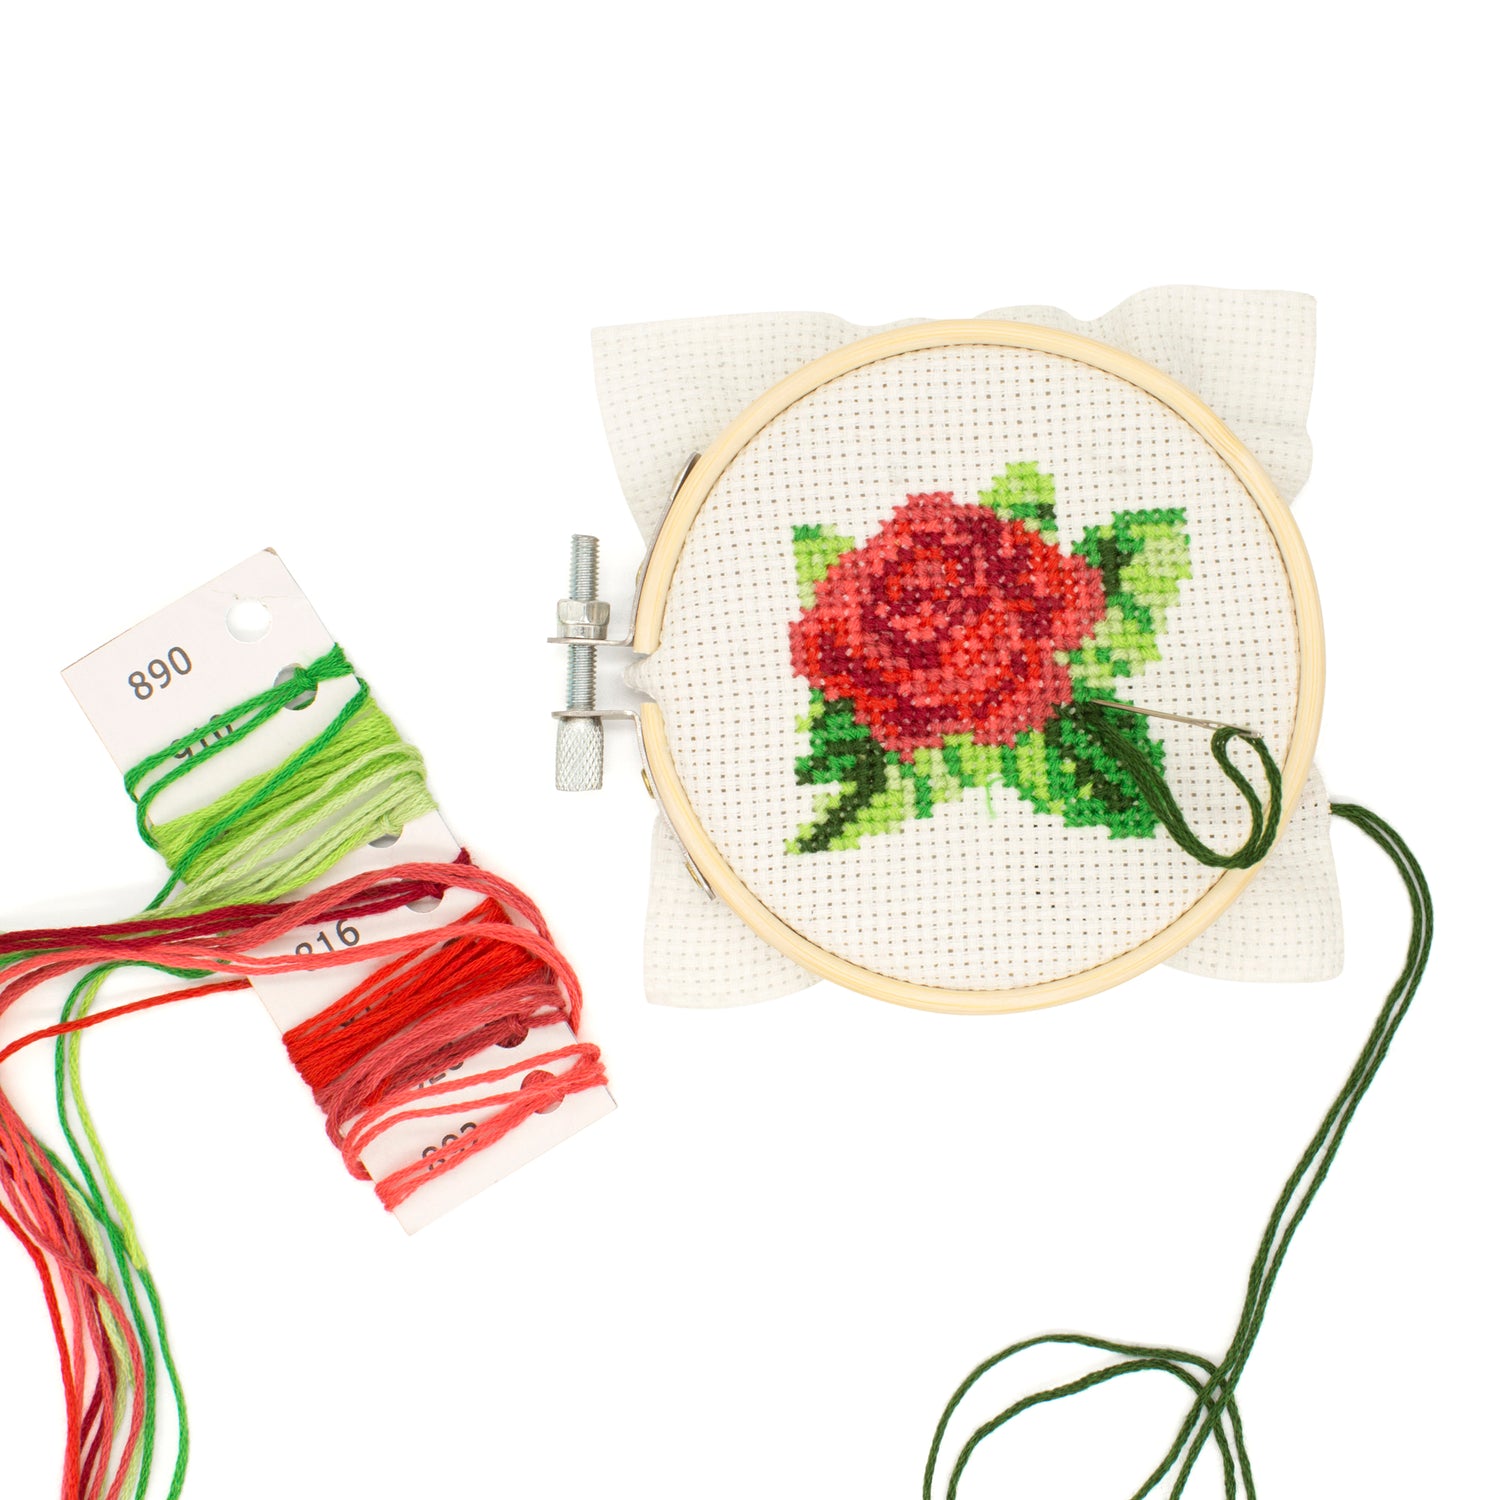 Kikkerland Mini Cross Stitch Embroidery Kit - Rose